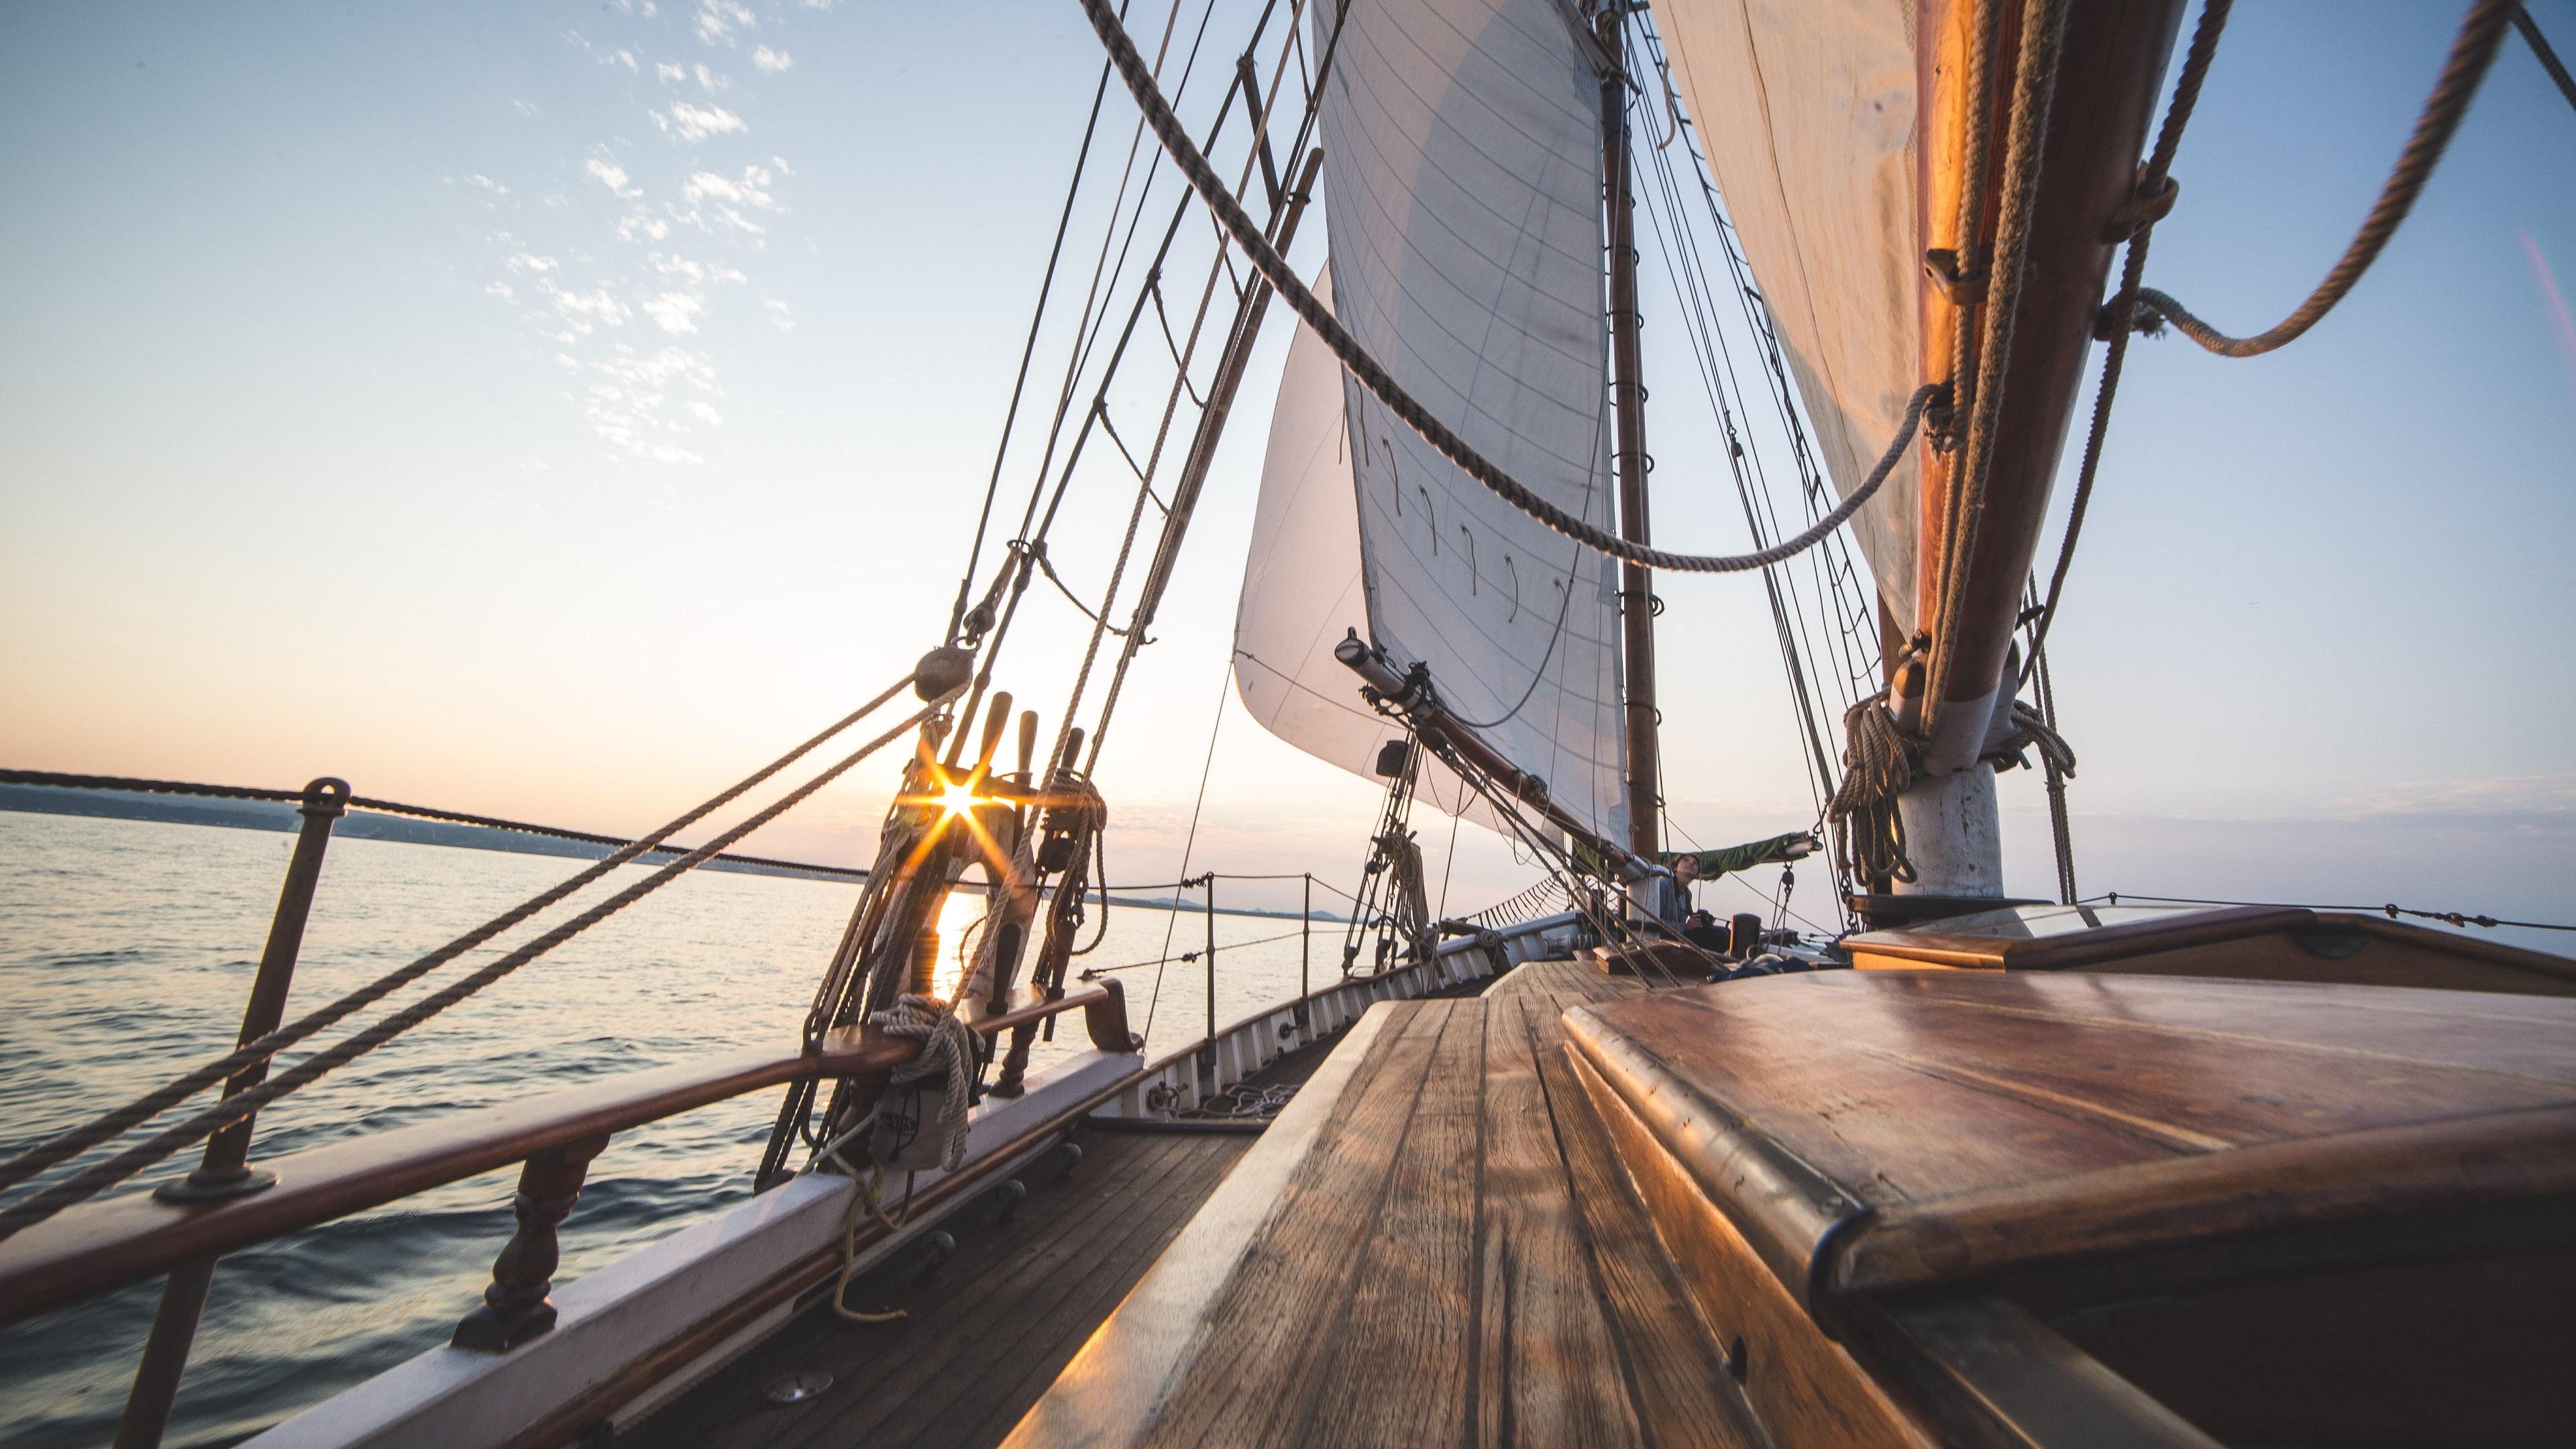 Sailing Era for windows download free